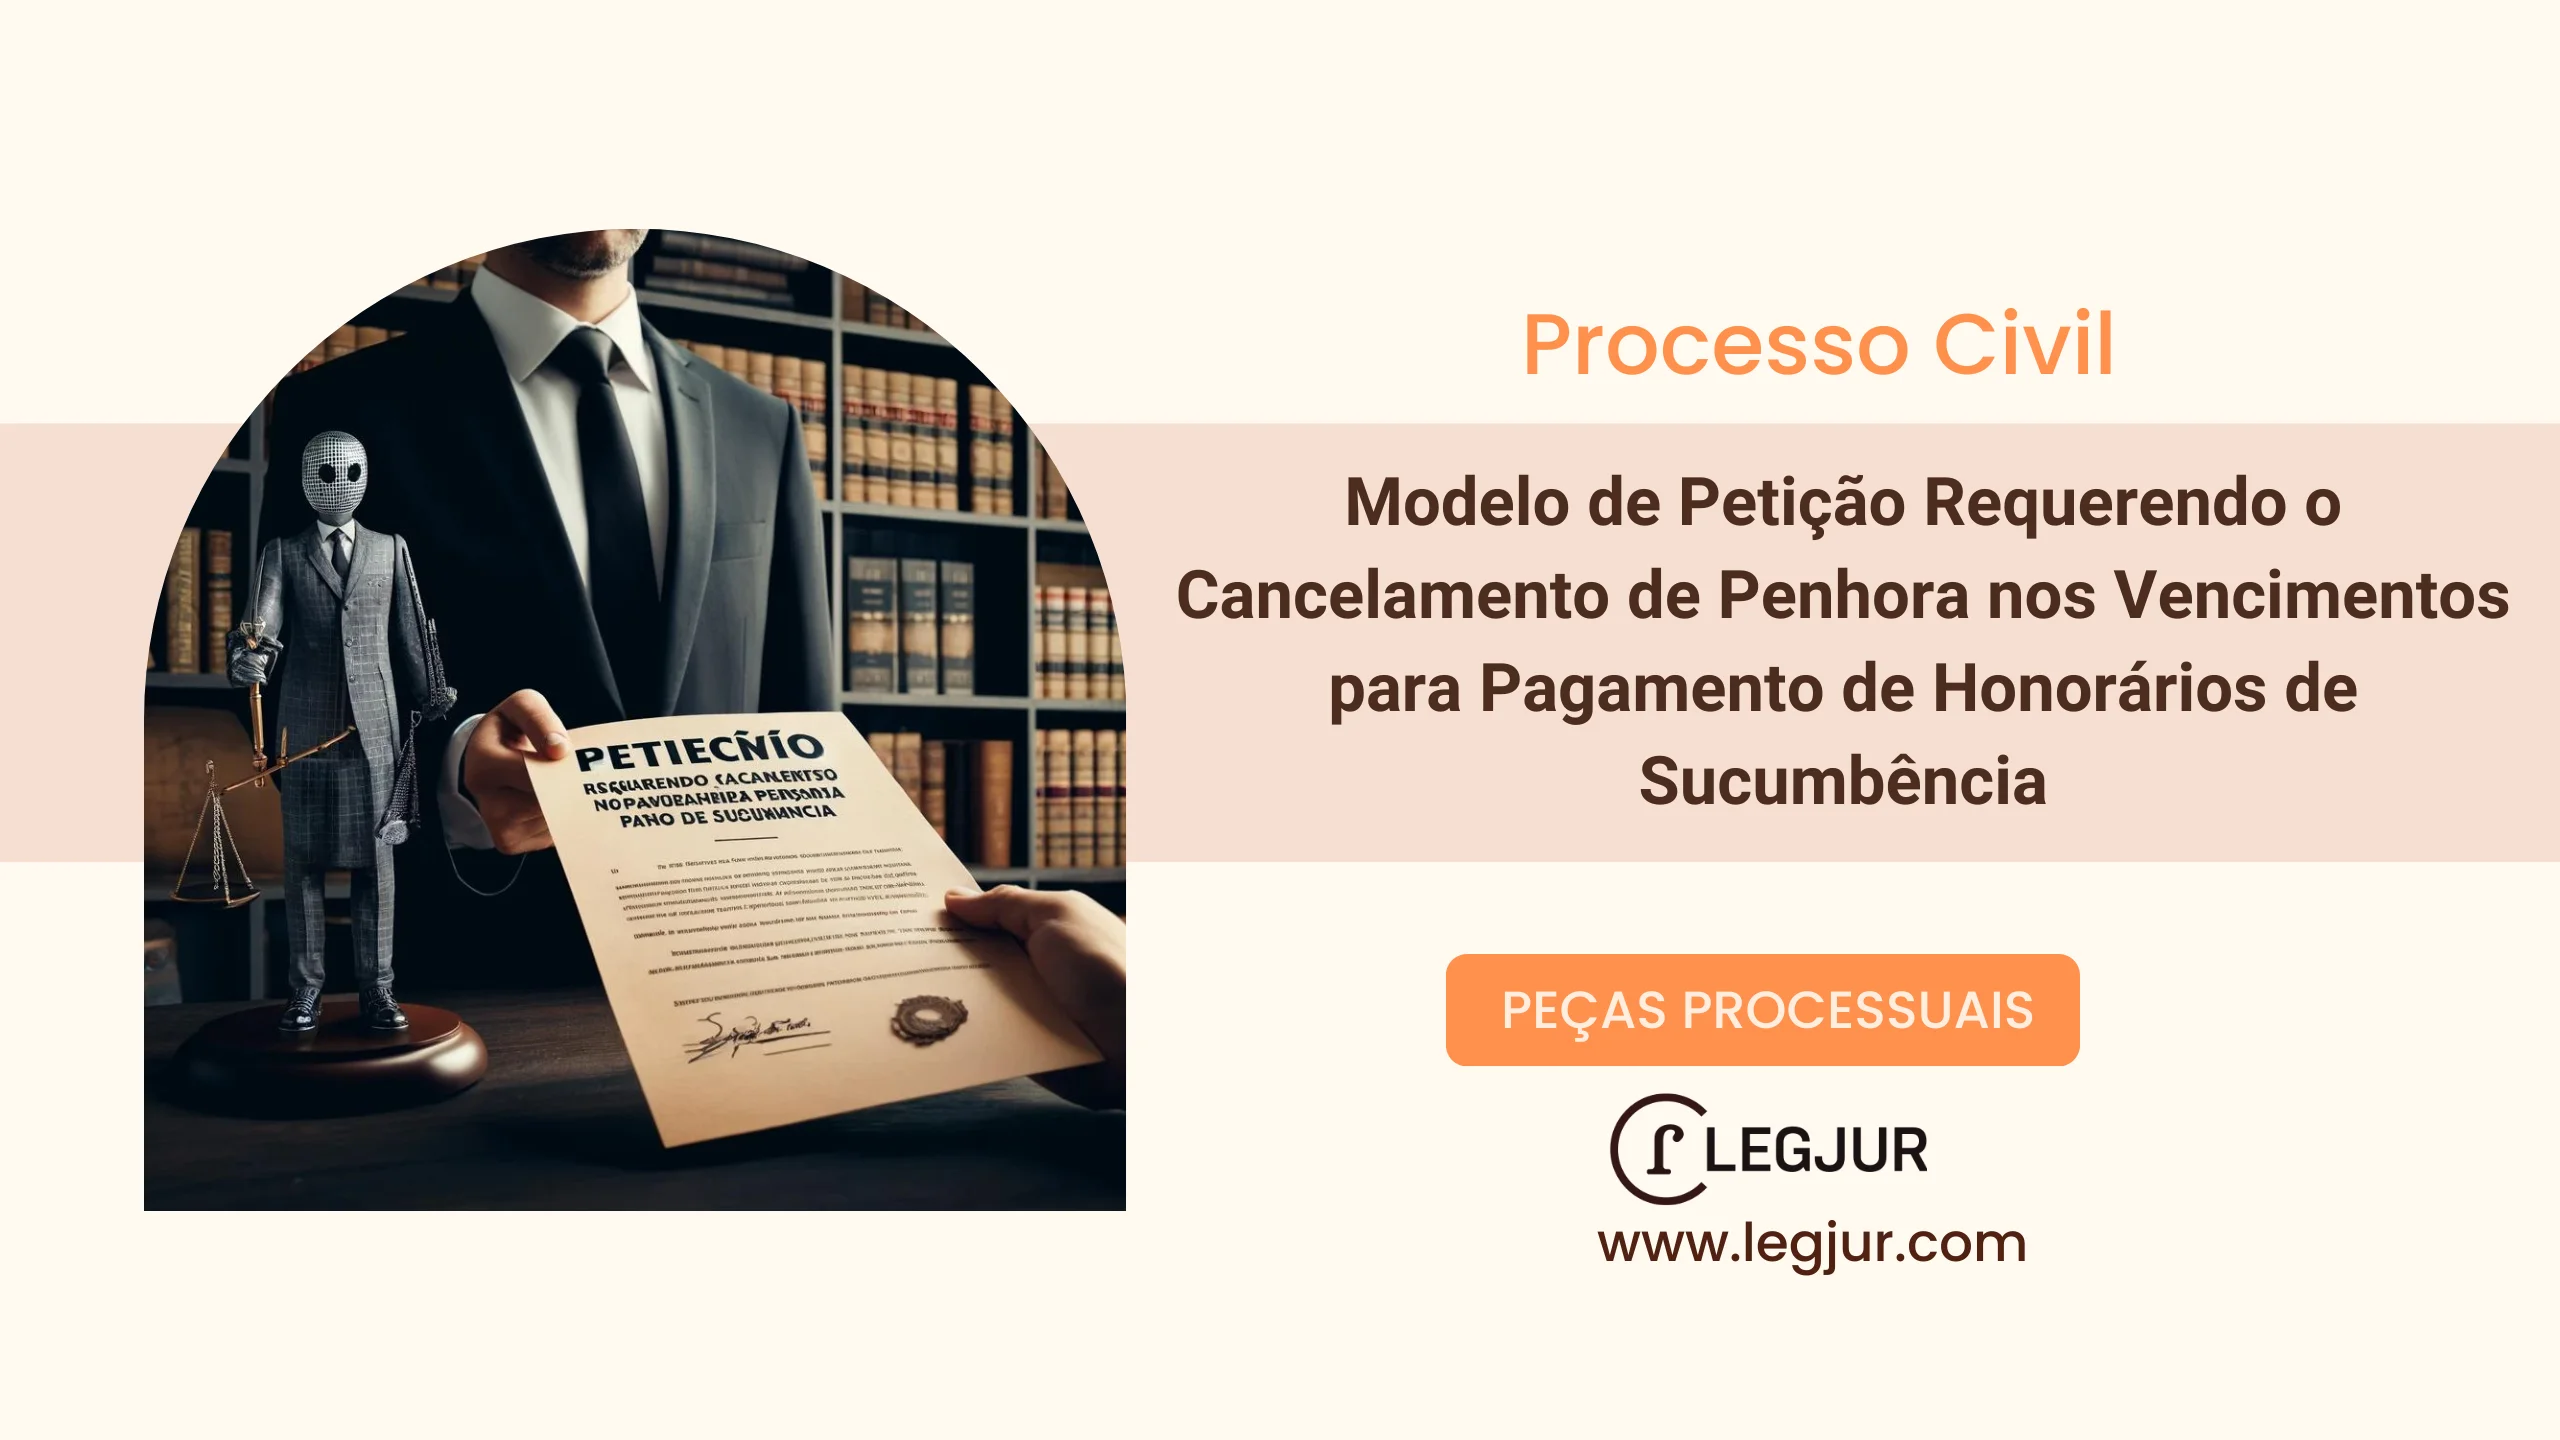 Modelo de Petição Requerendo o Cancelamento de Penhora nos Vencimentos para Pagamento de Honorários de Sucumbência